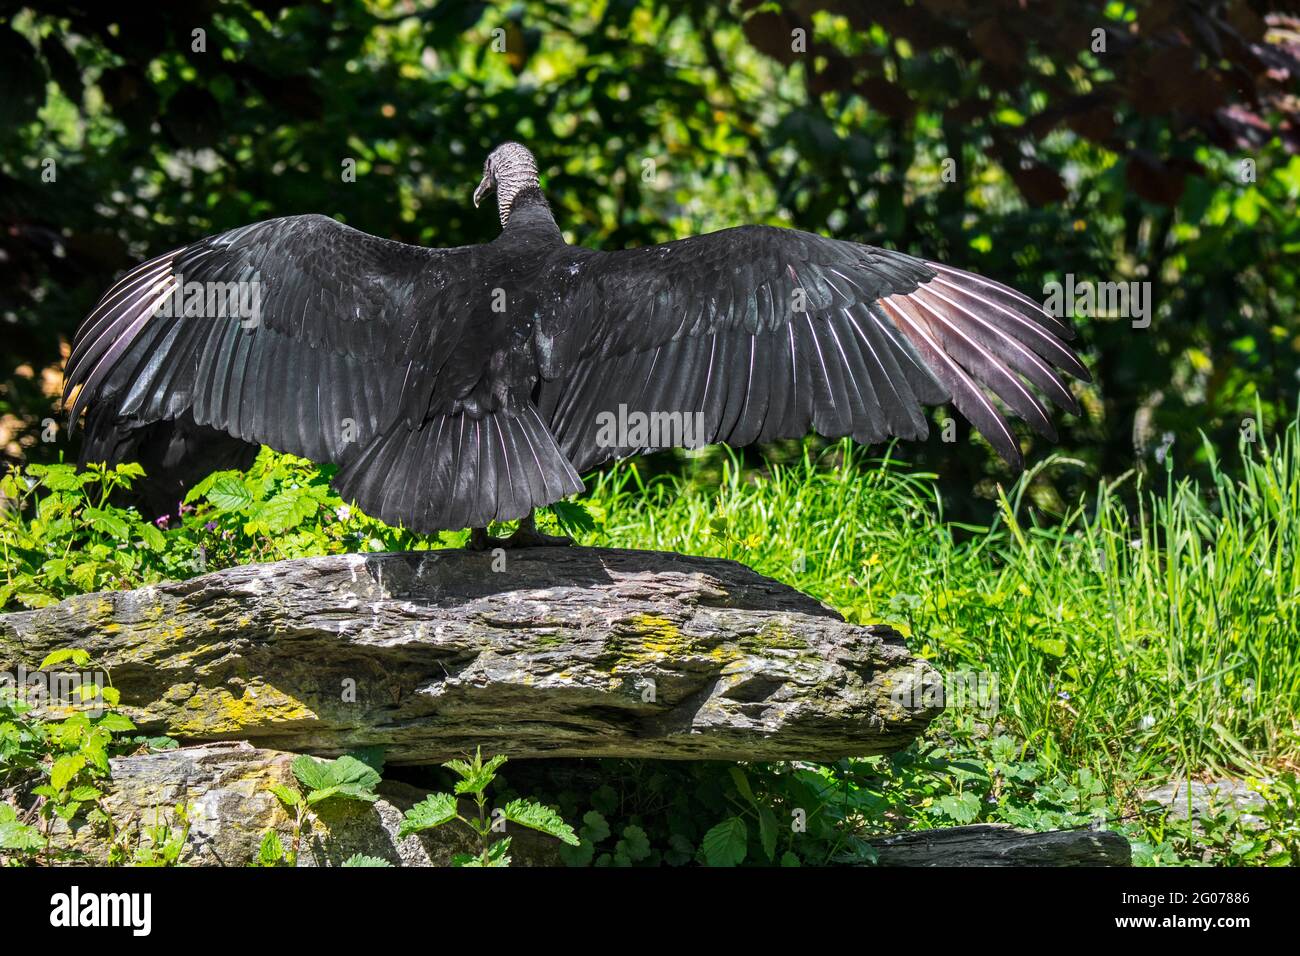 La vautour noire américaine (Coragyps atratus) étalant des ailes montrant une posture horaltique utilisée pour sécher, réchauffer le corps et éliminer les bactéries Banque D'Images